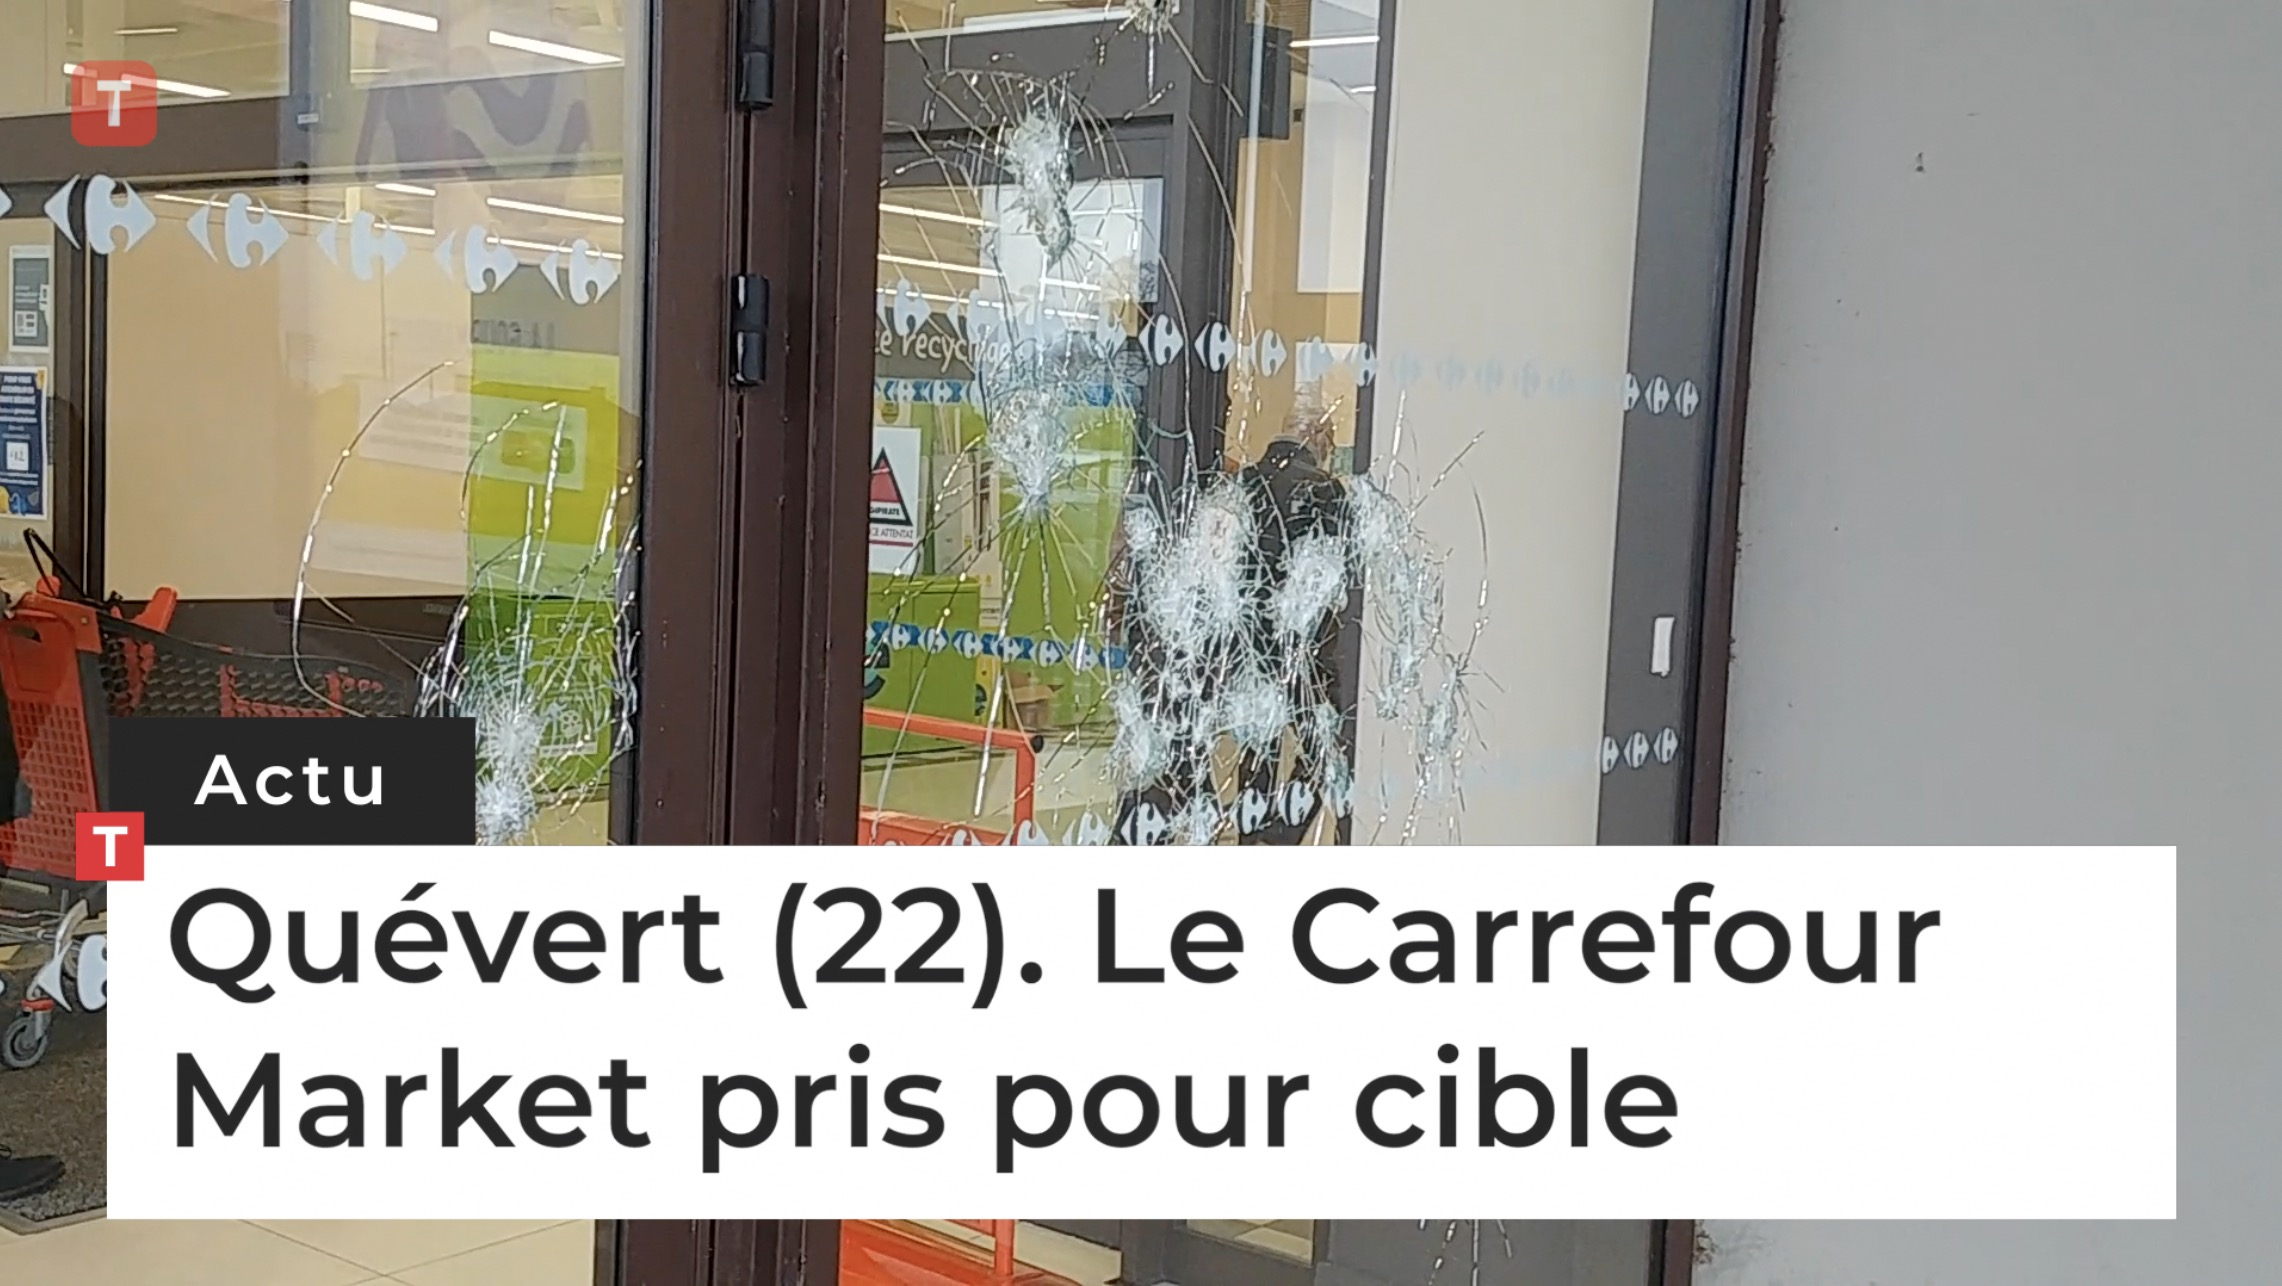 Quévert (22). Le Carrefour Market pris pour cible (Le Télégramme)